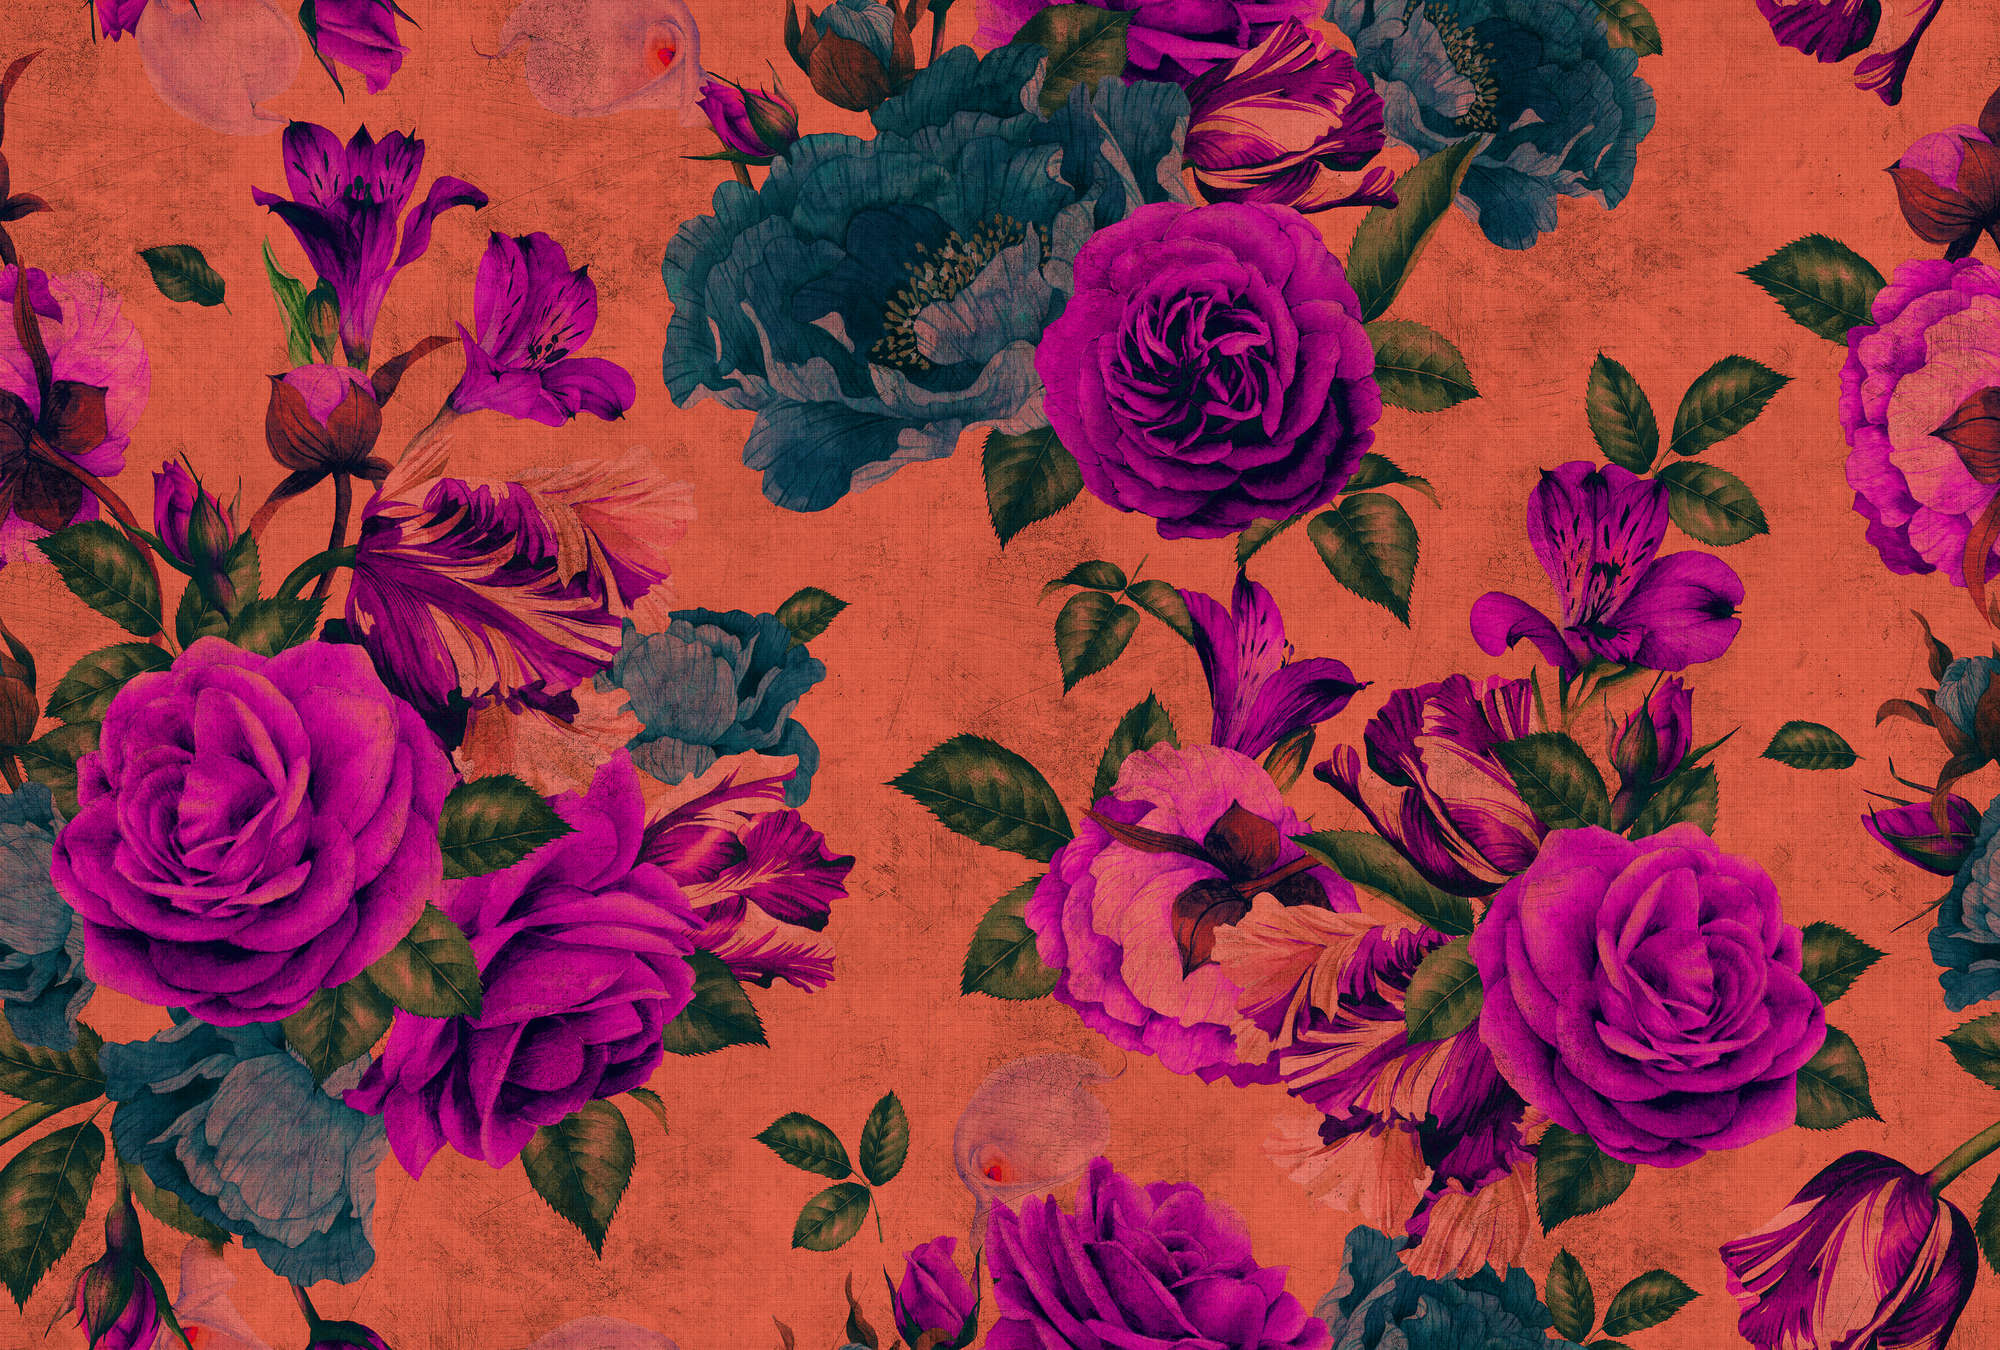             Spanish rose 2 - Carta da parati con fiori di rosa, struttura naturale con colori vivaci - Arancione, Viola | Vello liscio premium
        